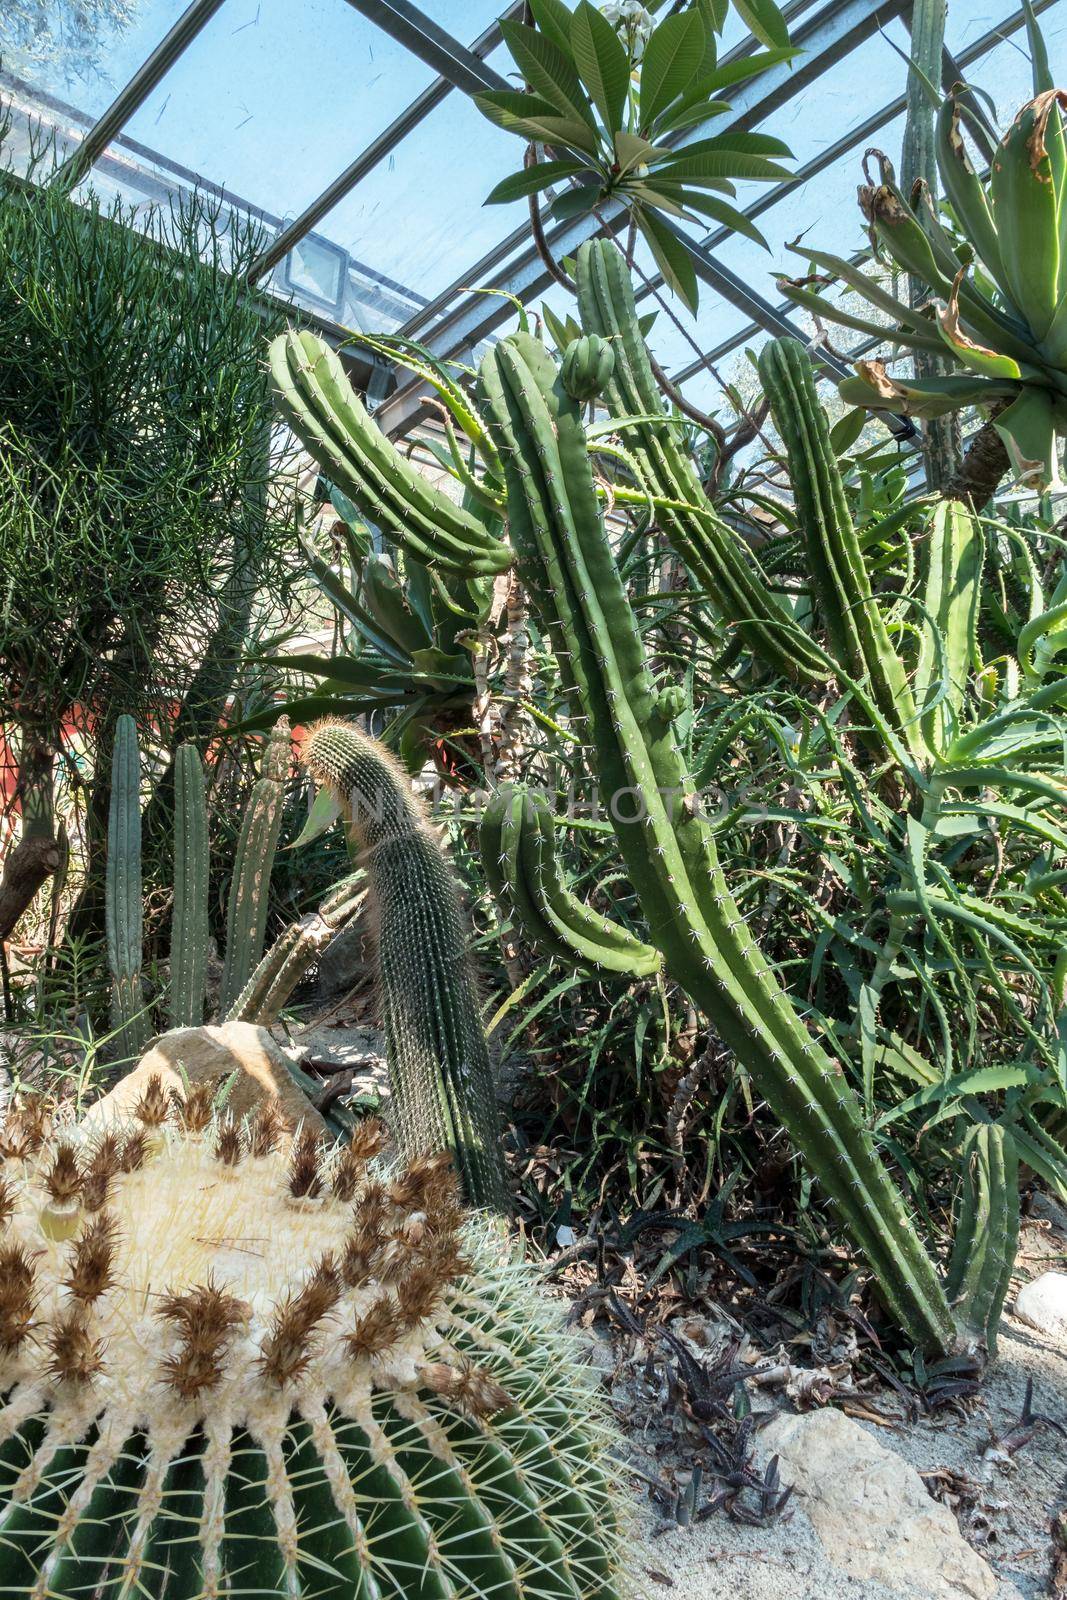 Cactus garden by germanopoli